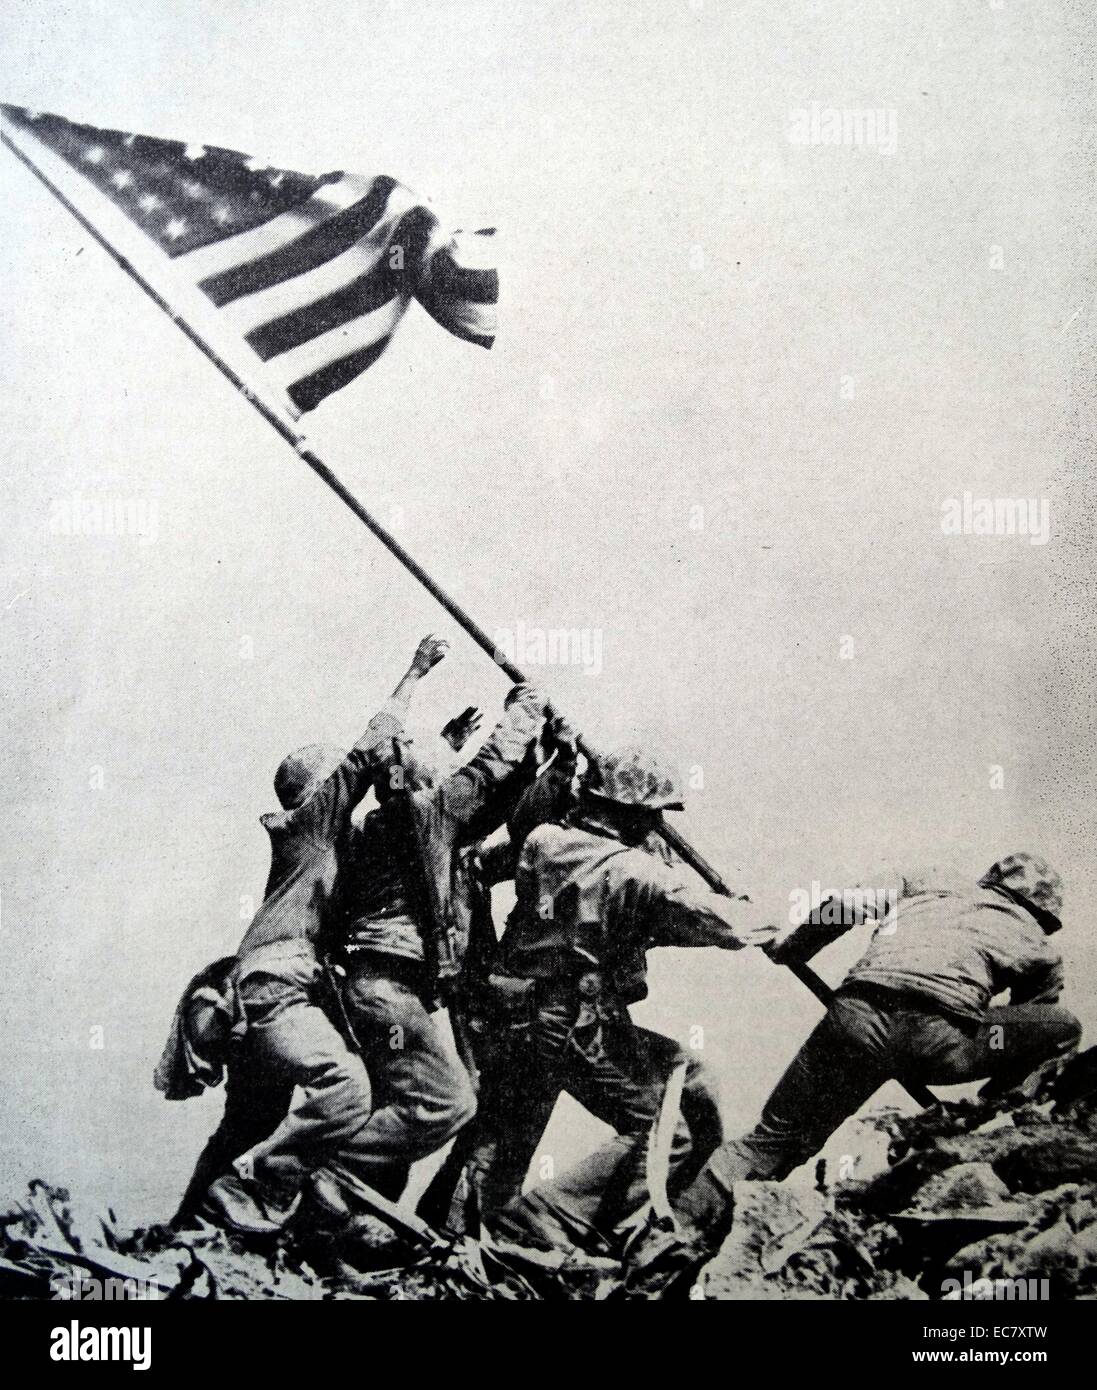 Le drapeau sur Iwo Jima est une photographie prise le 23 février 1945. Il décrit cinq Marines américains et un US Navy corpsman d'élever une télévision au sommet du mont Suribachi US, au cours de la bataille d'Iwo Jima dans WW2. Banque D'Images